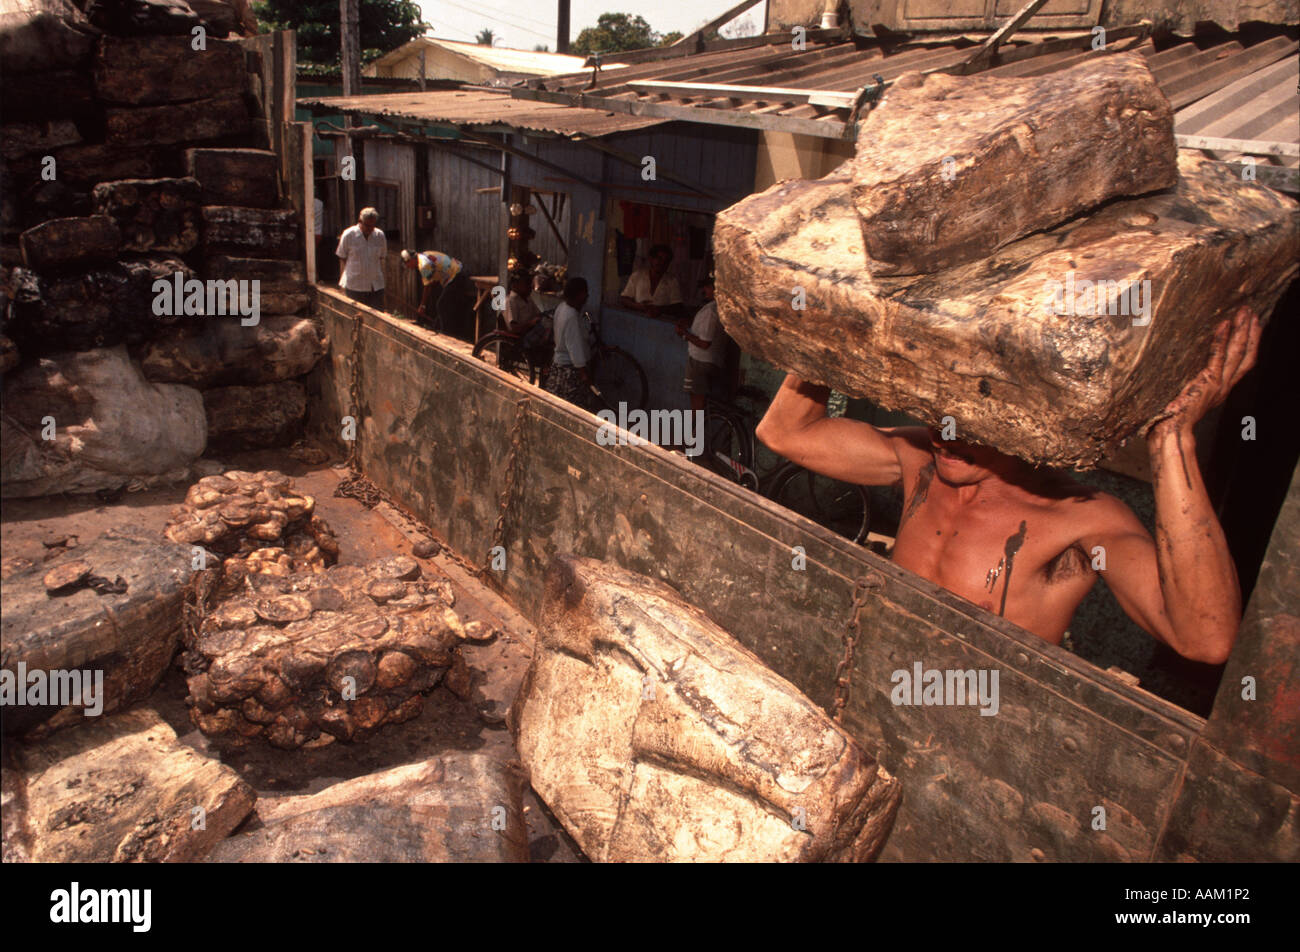 Amazonas, Brasilien. Arbeiter laden Kautschuk im LKW. Ausfuhr von natürlichen Ressourcen Stockfoto